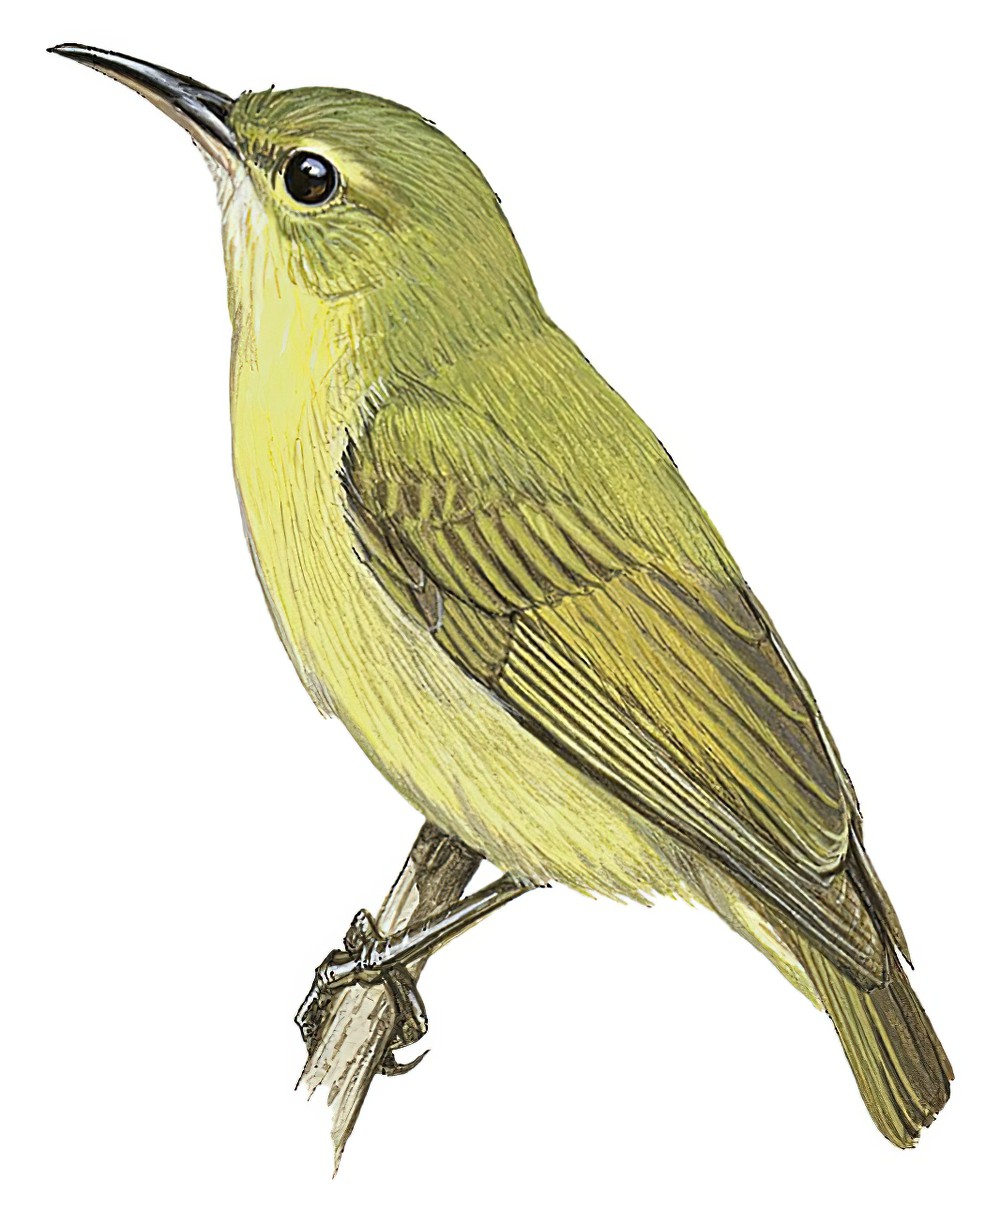 Little Green Sunbird / Anthreptes seimundi